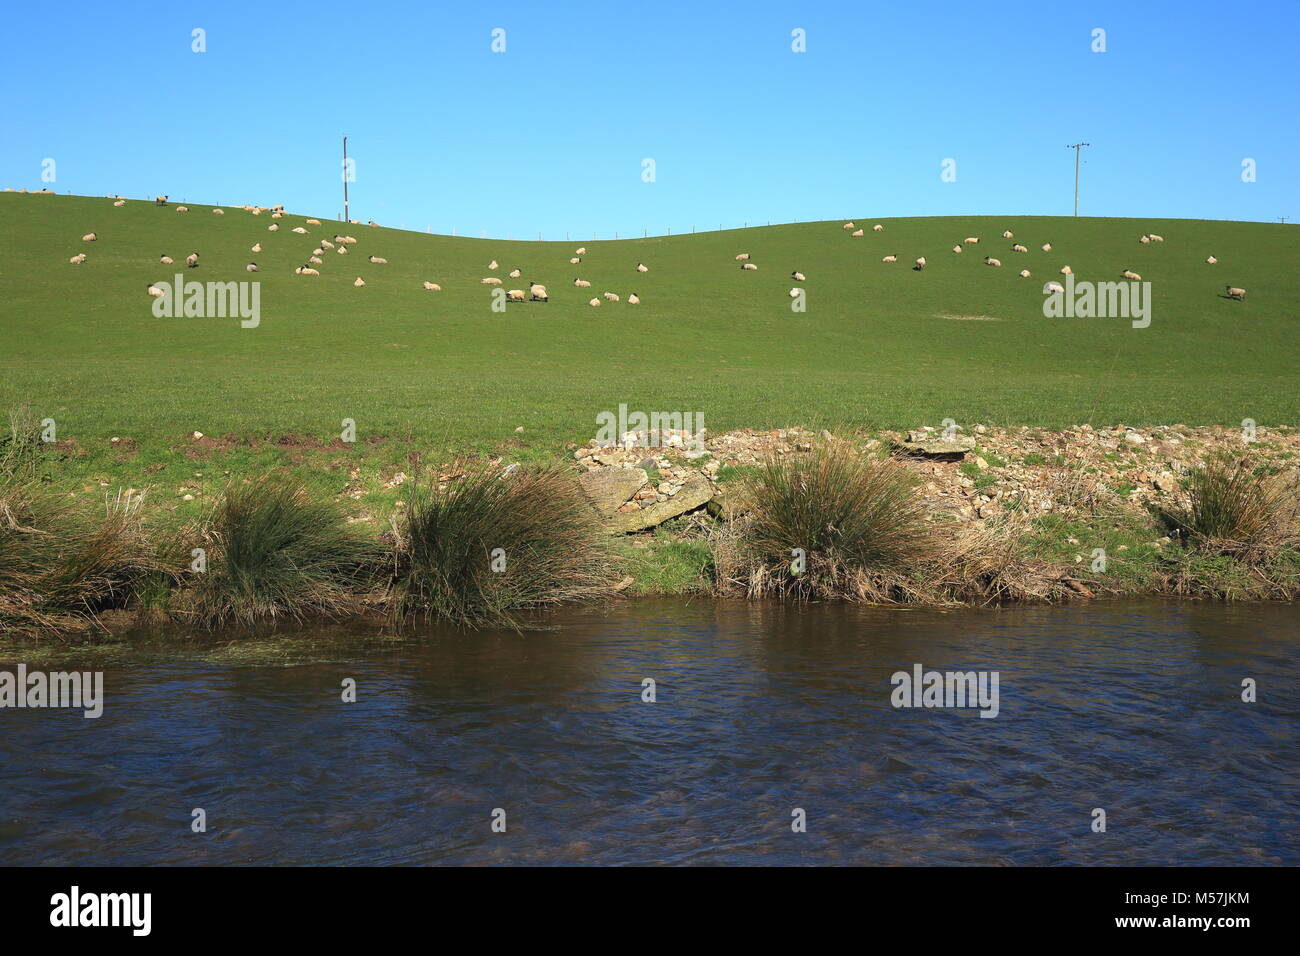 Herde Schafe auf einer landwirtschaftlichen Nutzfläche in East Devon Gebiet von außergewöhnlicher natürlicher Schönheit Stockfoto